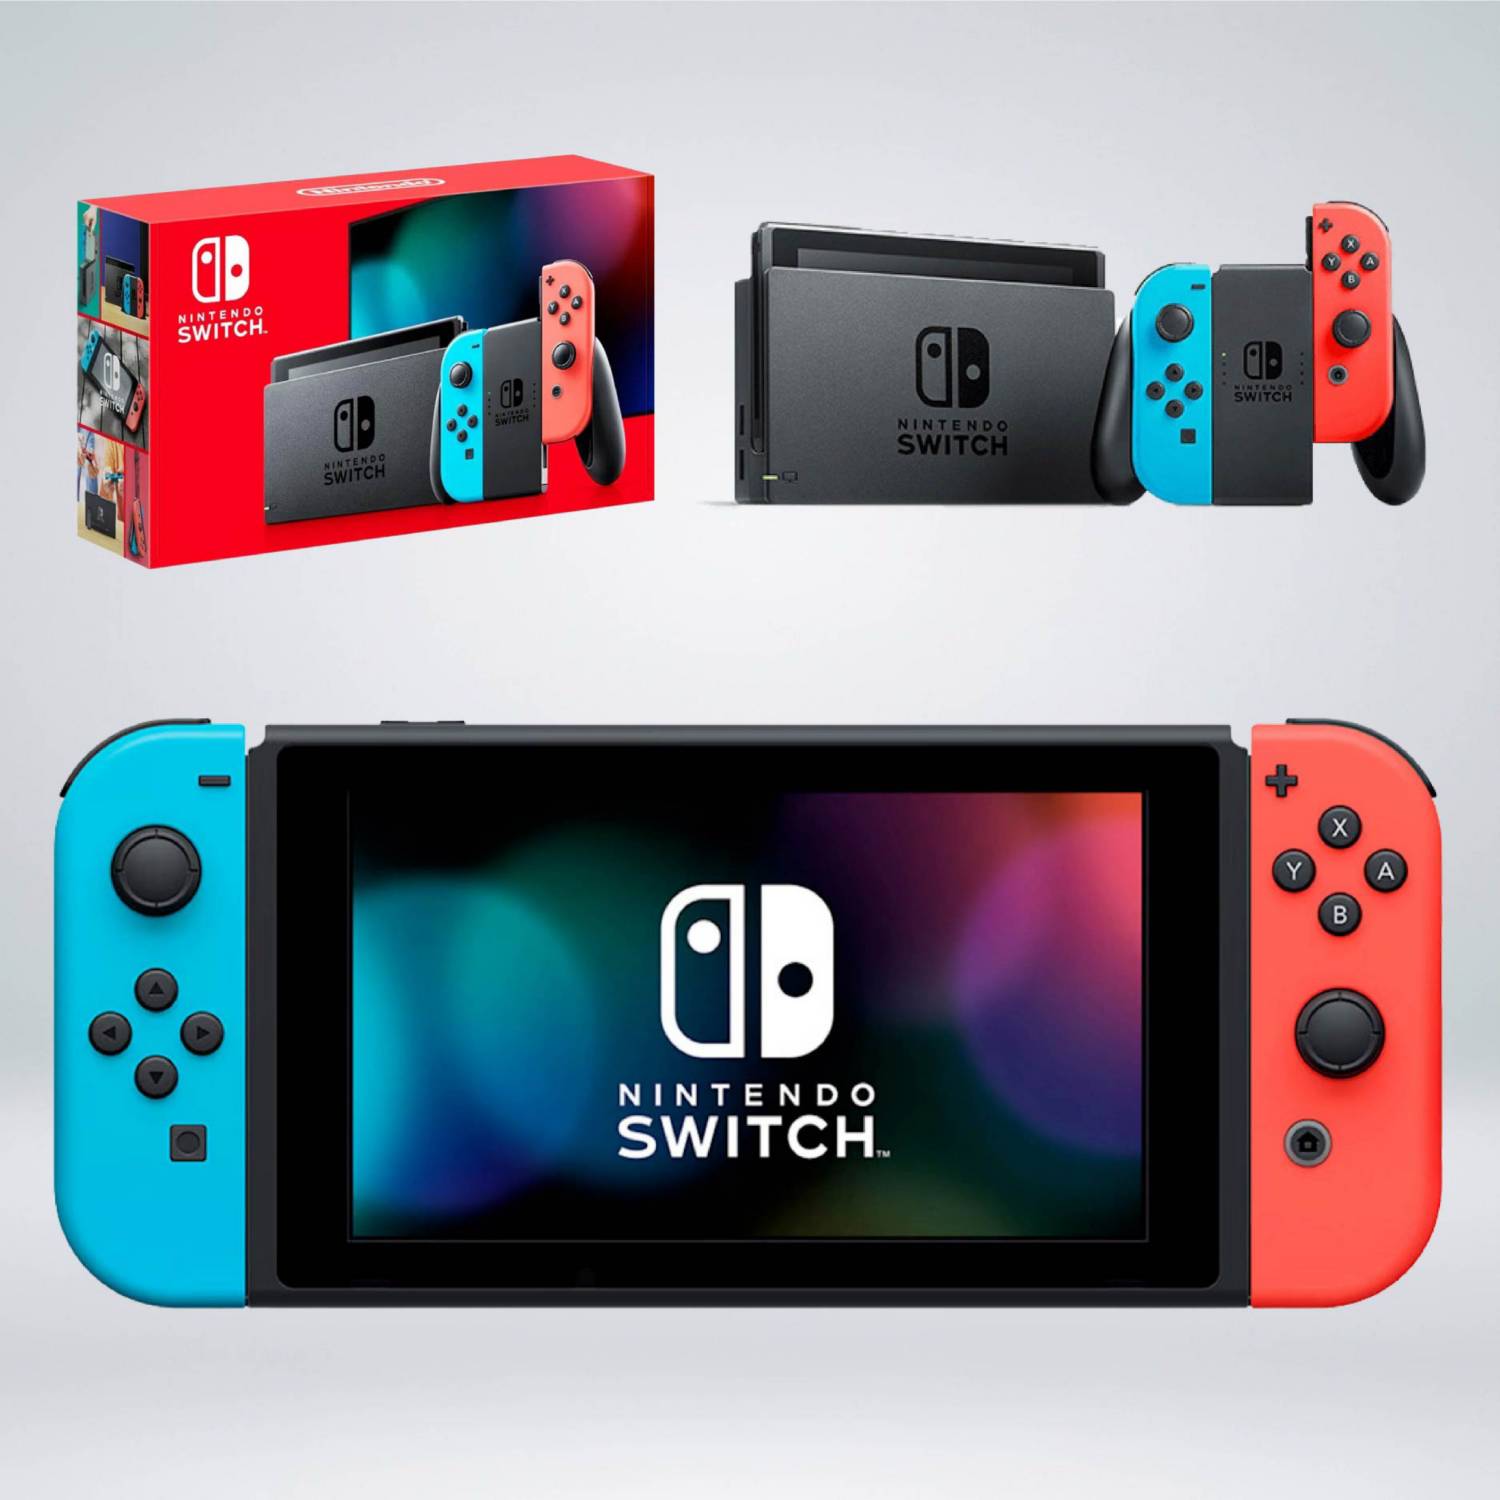 Nintendo Switch OLED. Nintendo Switch OLED 2. Nintendo Switch OLED 64gb (Neon). Nintendo Switch OLED vs Nintendo Switch. Nintendo switch neon